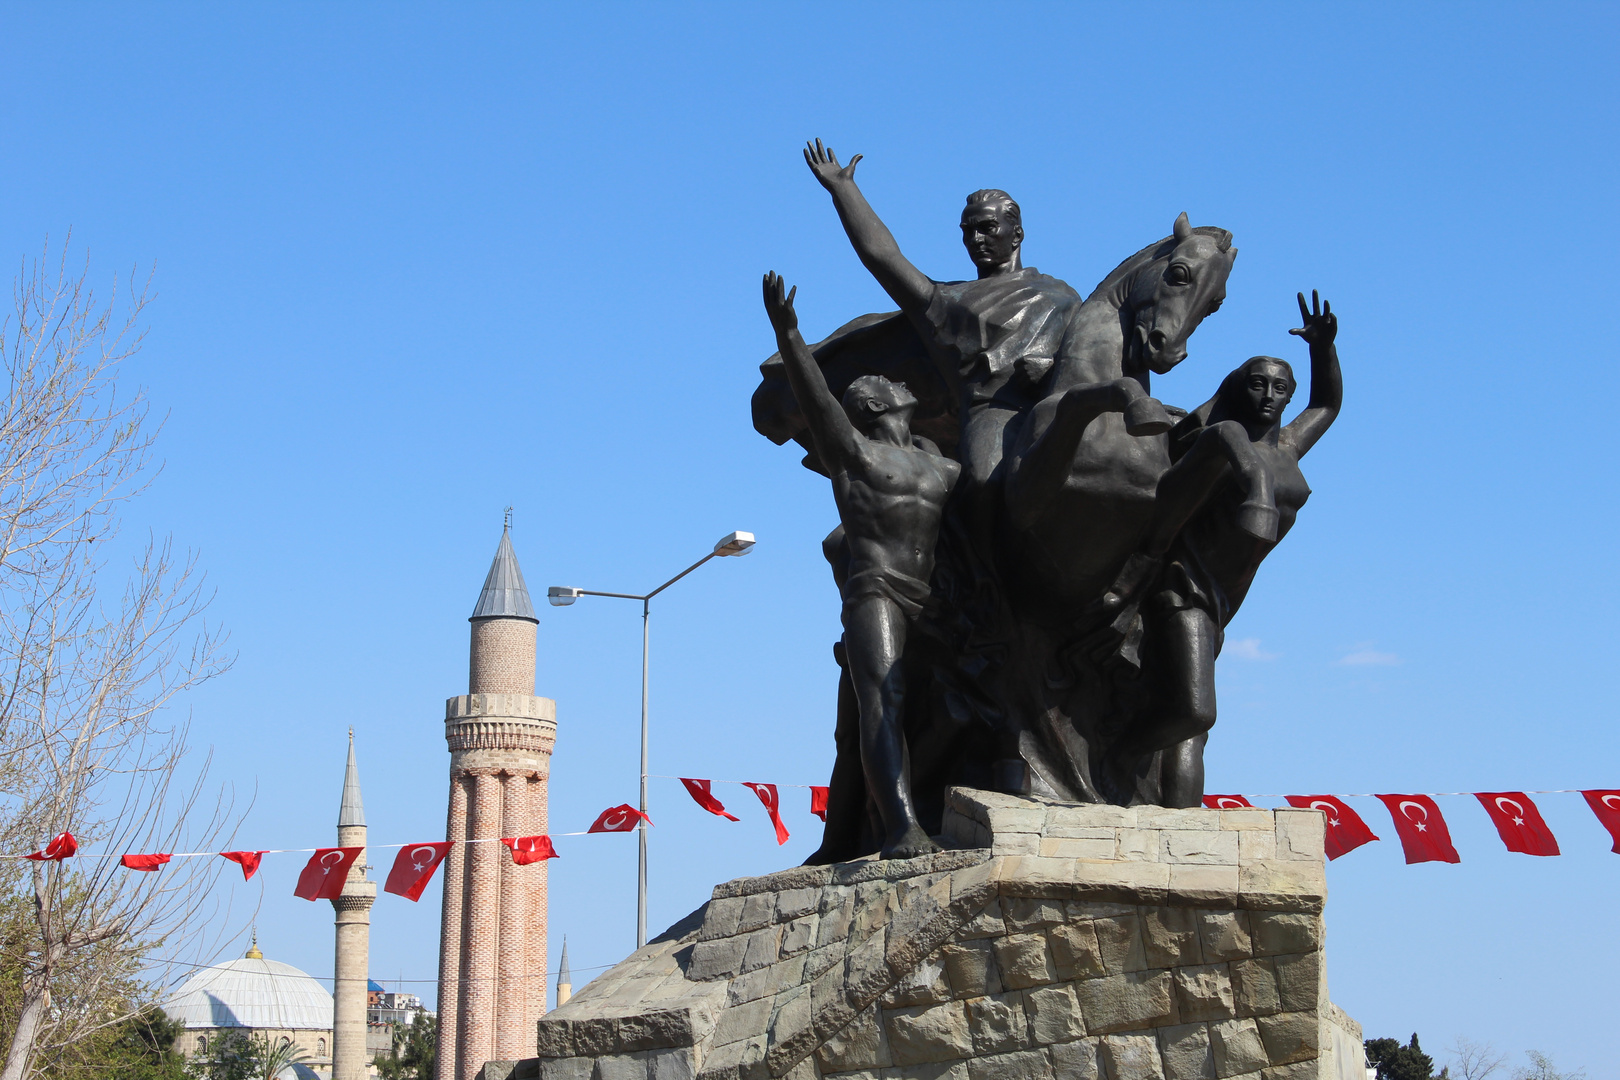 Attatürk-Denkmal in Antalya